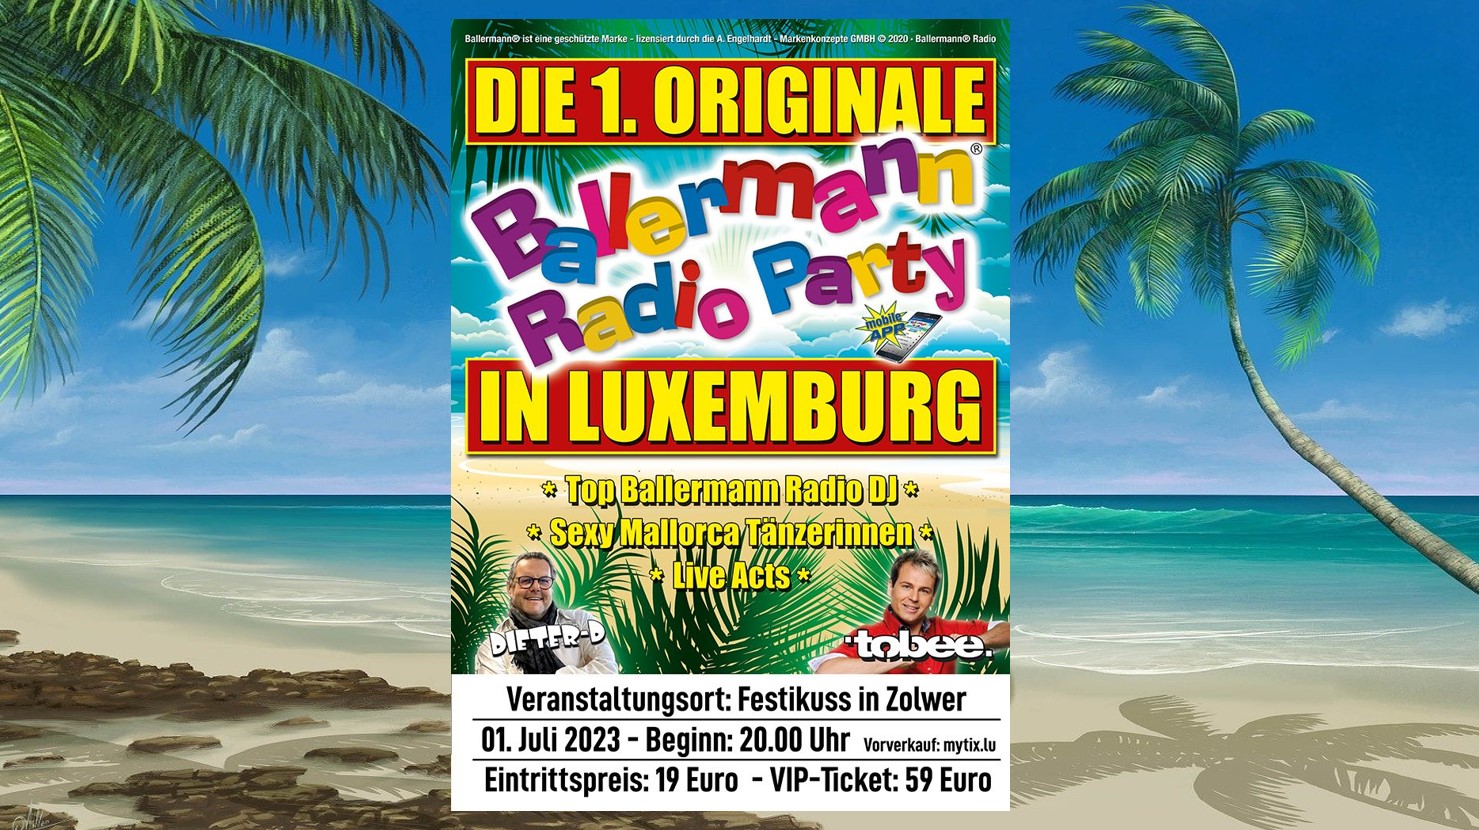 Erste originale Ballermann Radio Party in Luxemburg